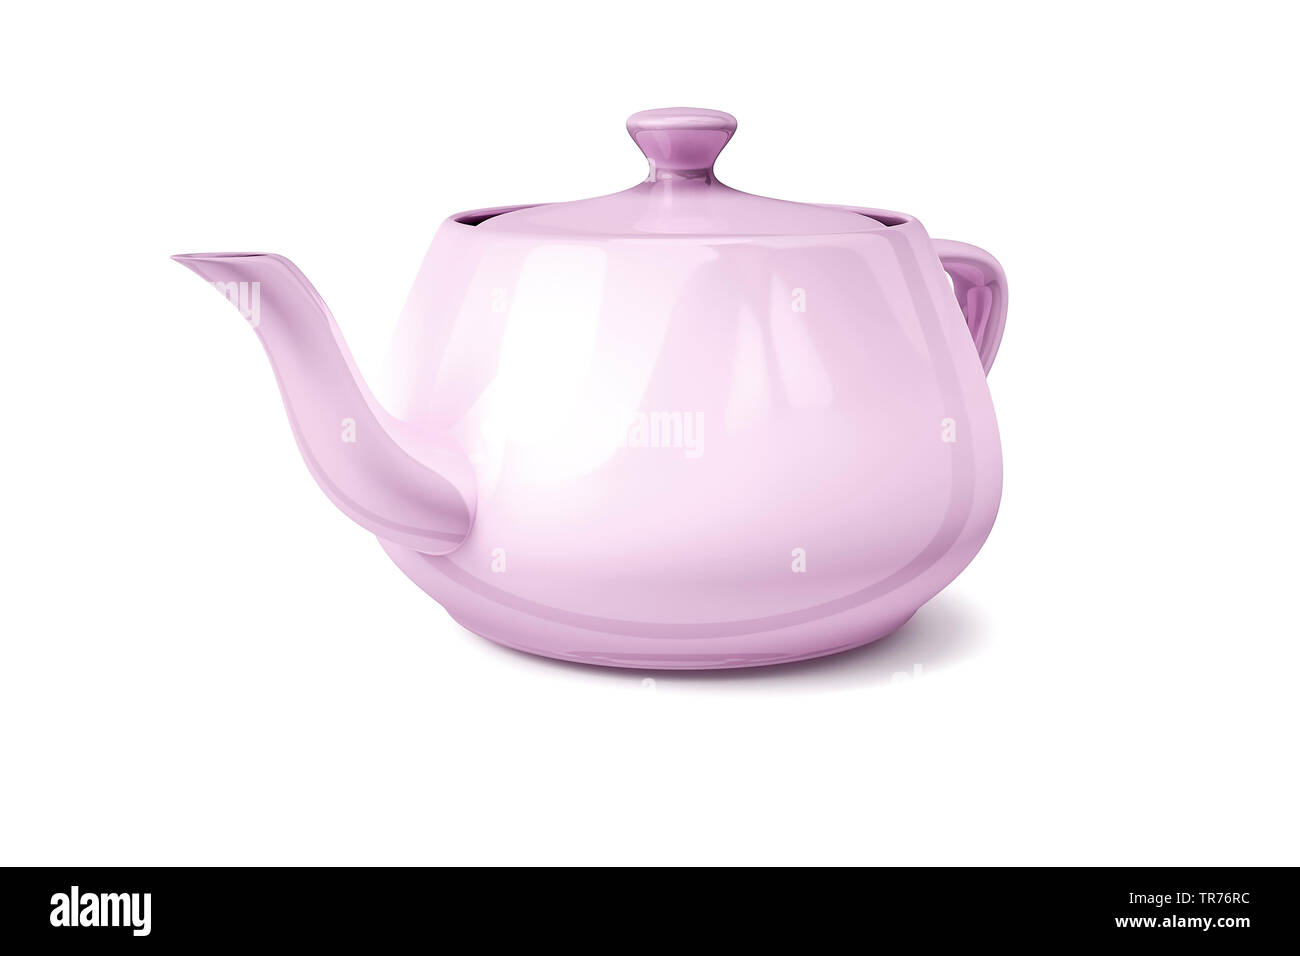 pink tea pot Stock Photo